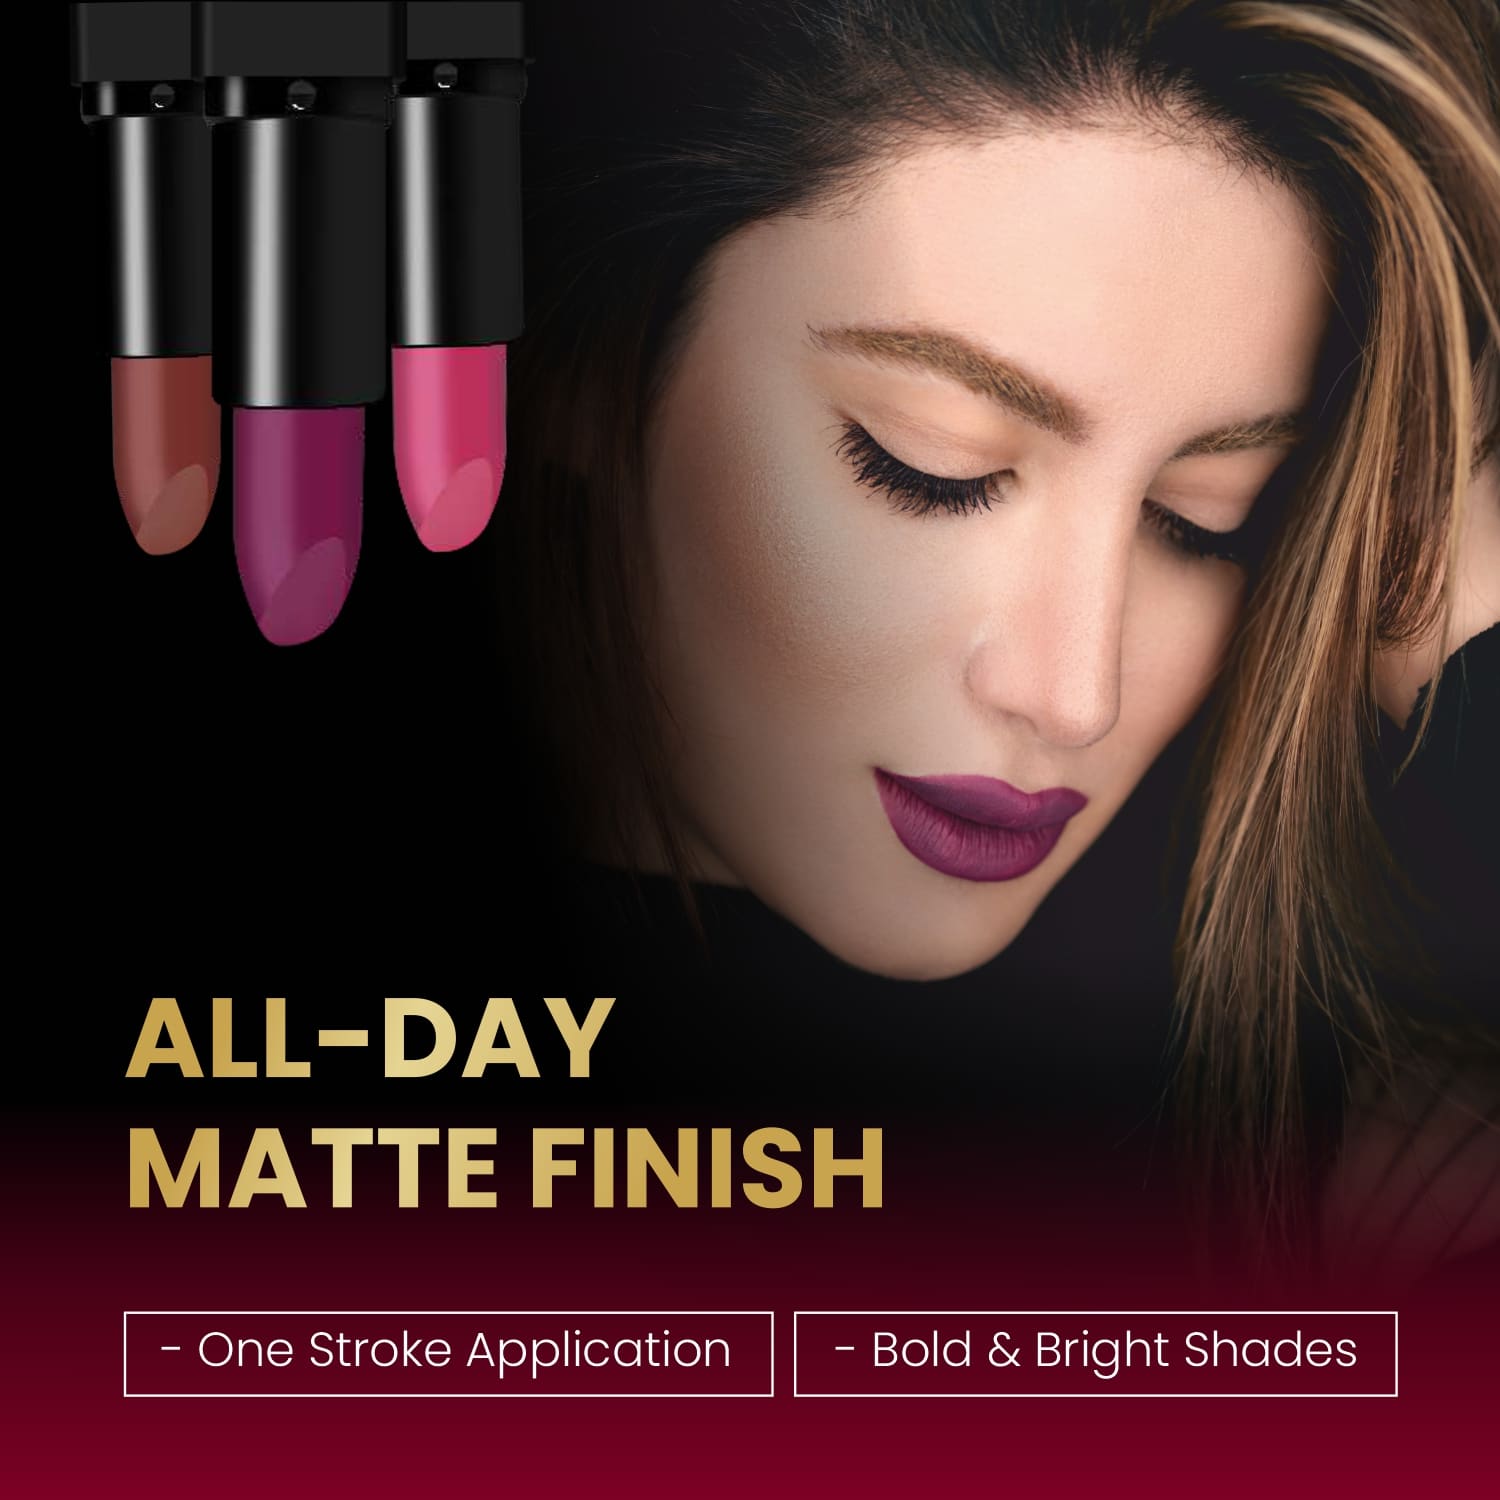 Wow Matte Lipstick - 18 Stay Tastey